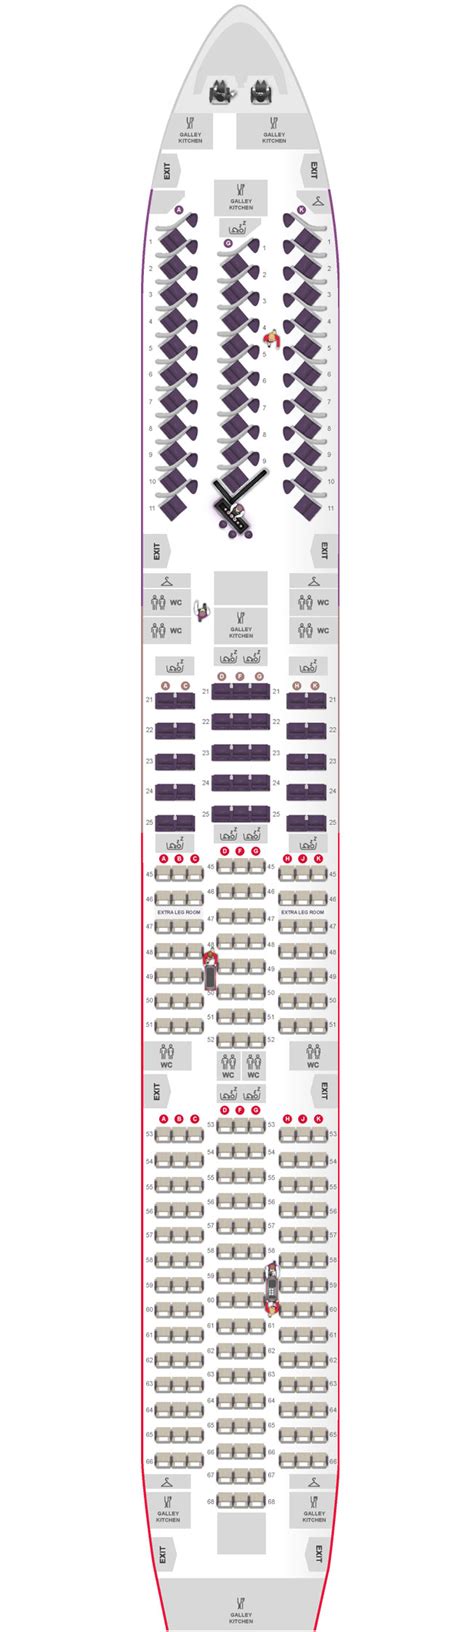 Virgin Atlantic 787 Dreamliner Seat Map